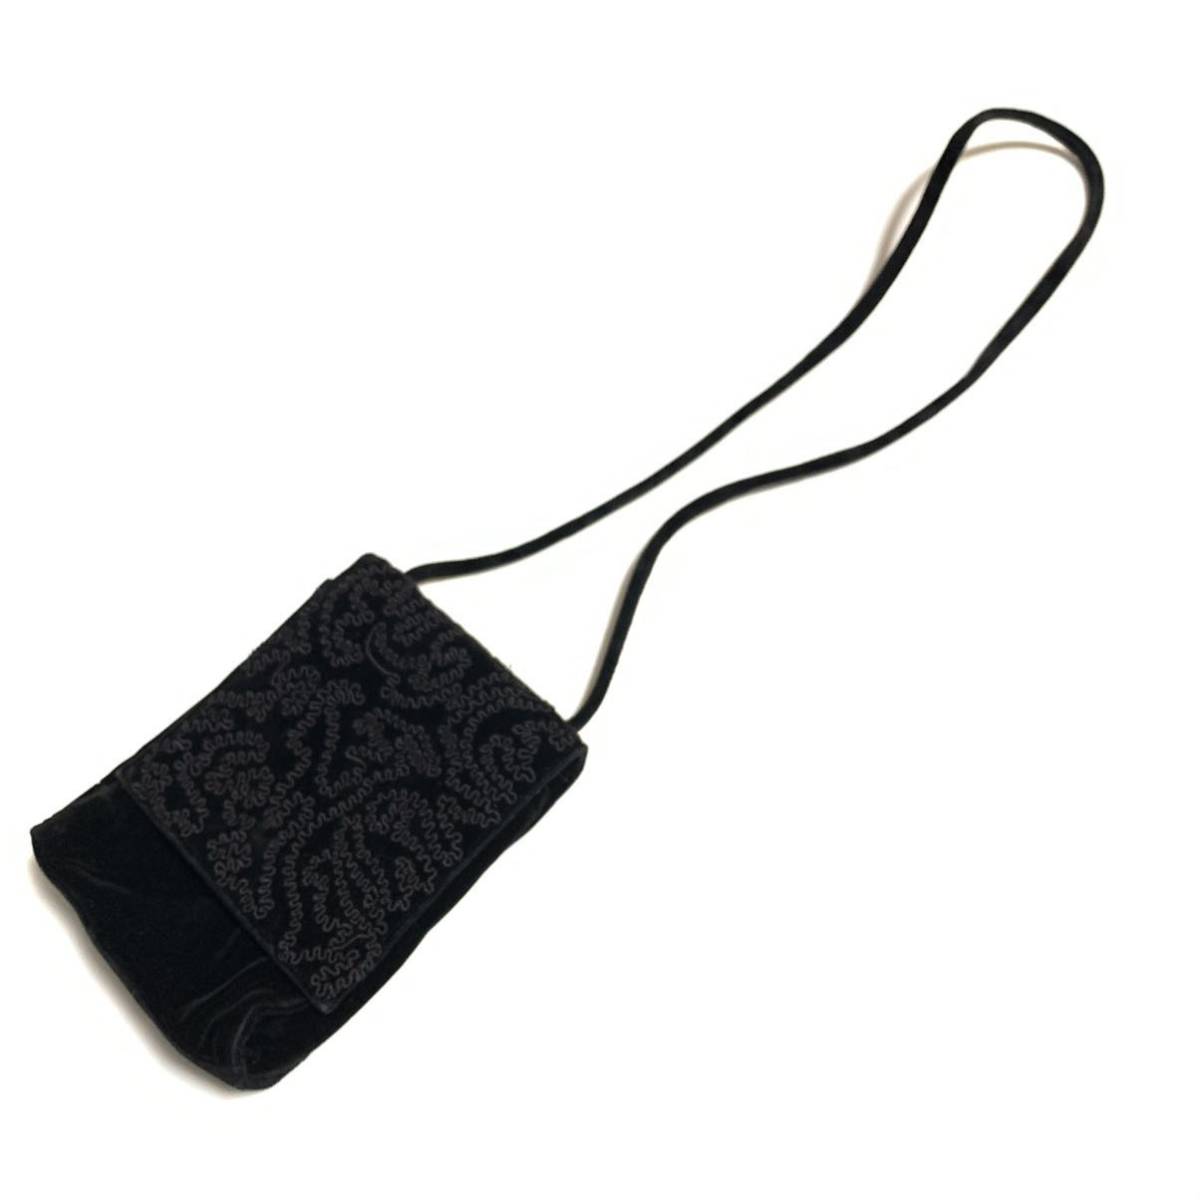 【ANTEPRIMA】アンテプリマ ショルダーバッグ 斜めがけショルダー ミニサイズ ブラック 保存袋付き ※ワイヤーバッグではありませんの画像2